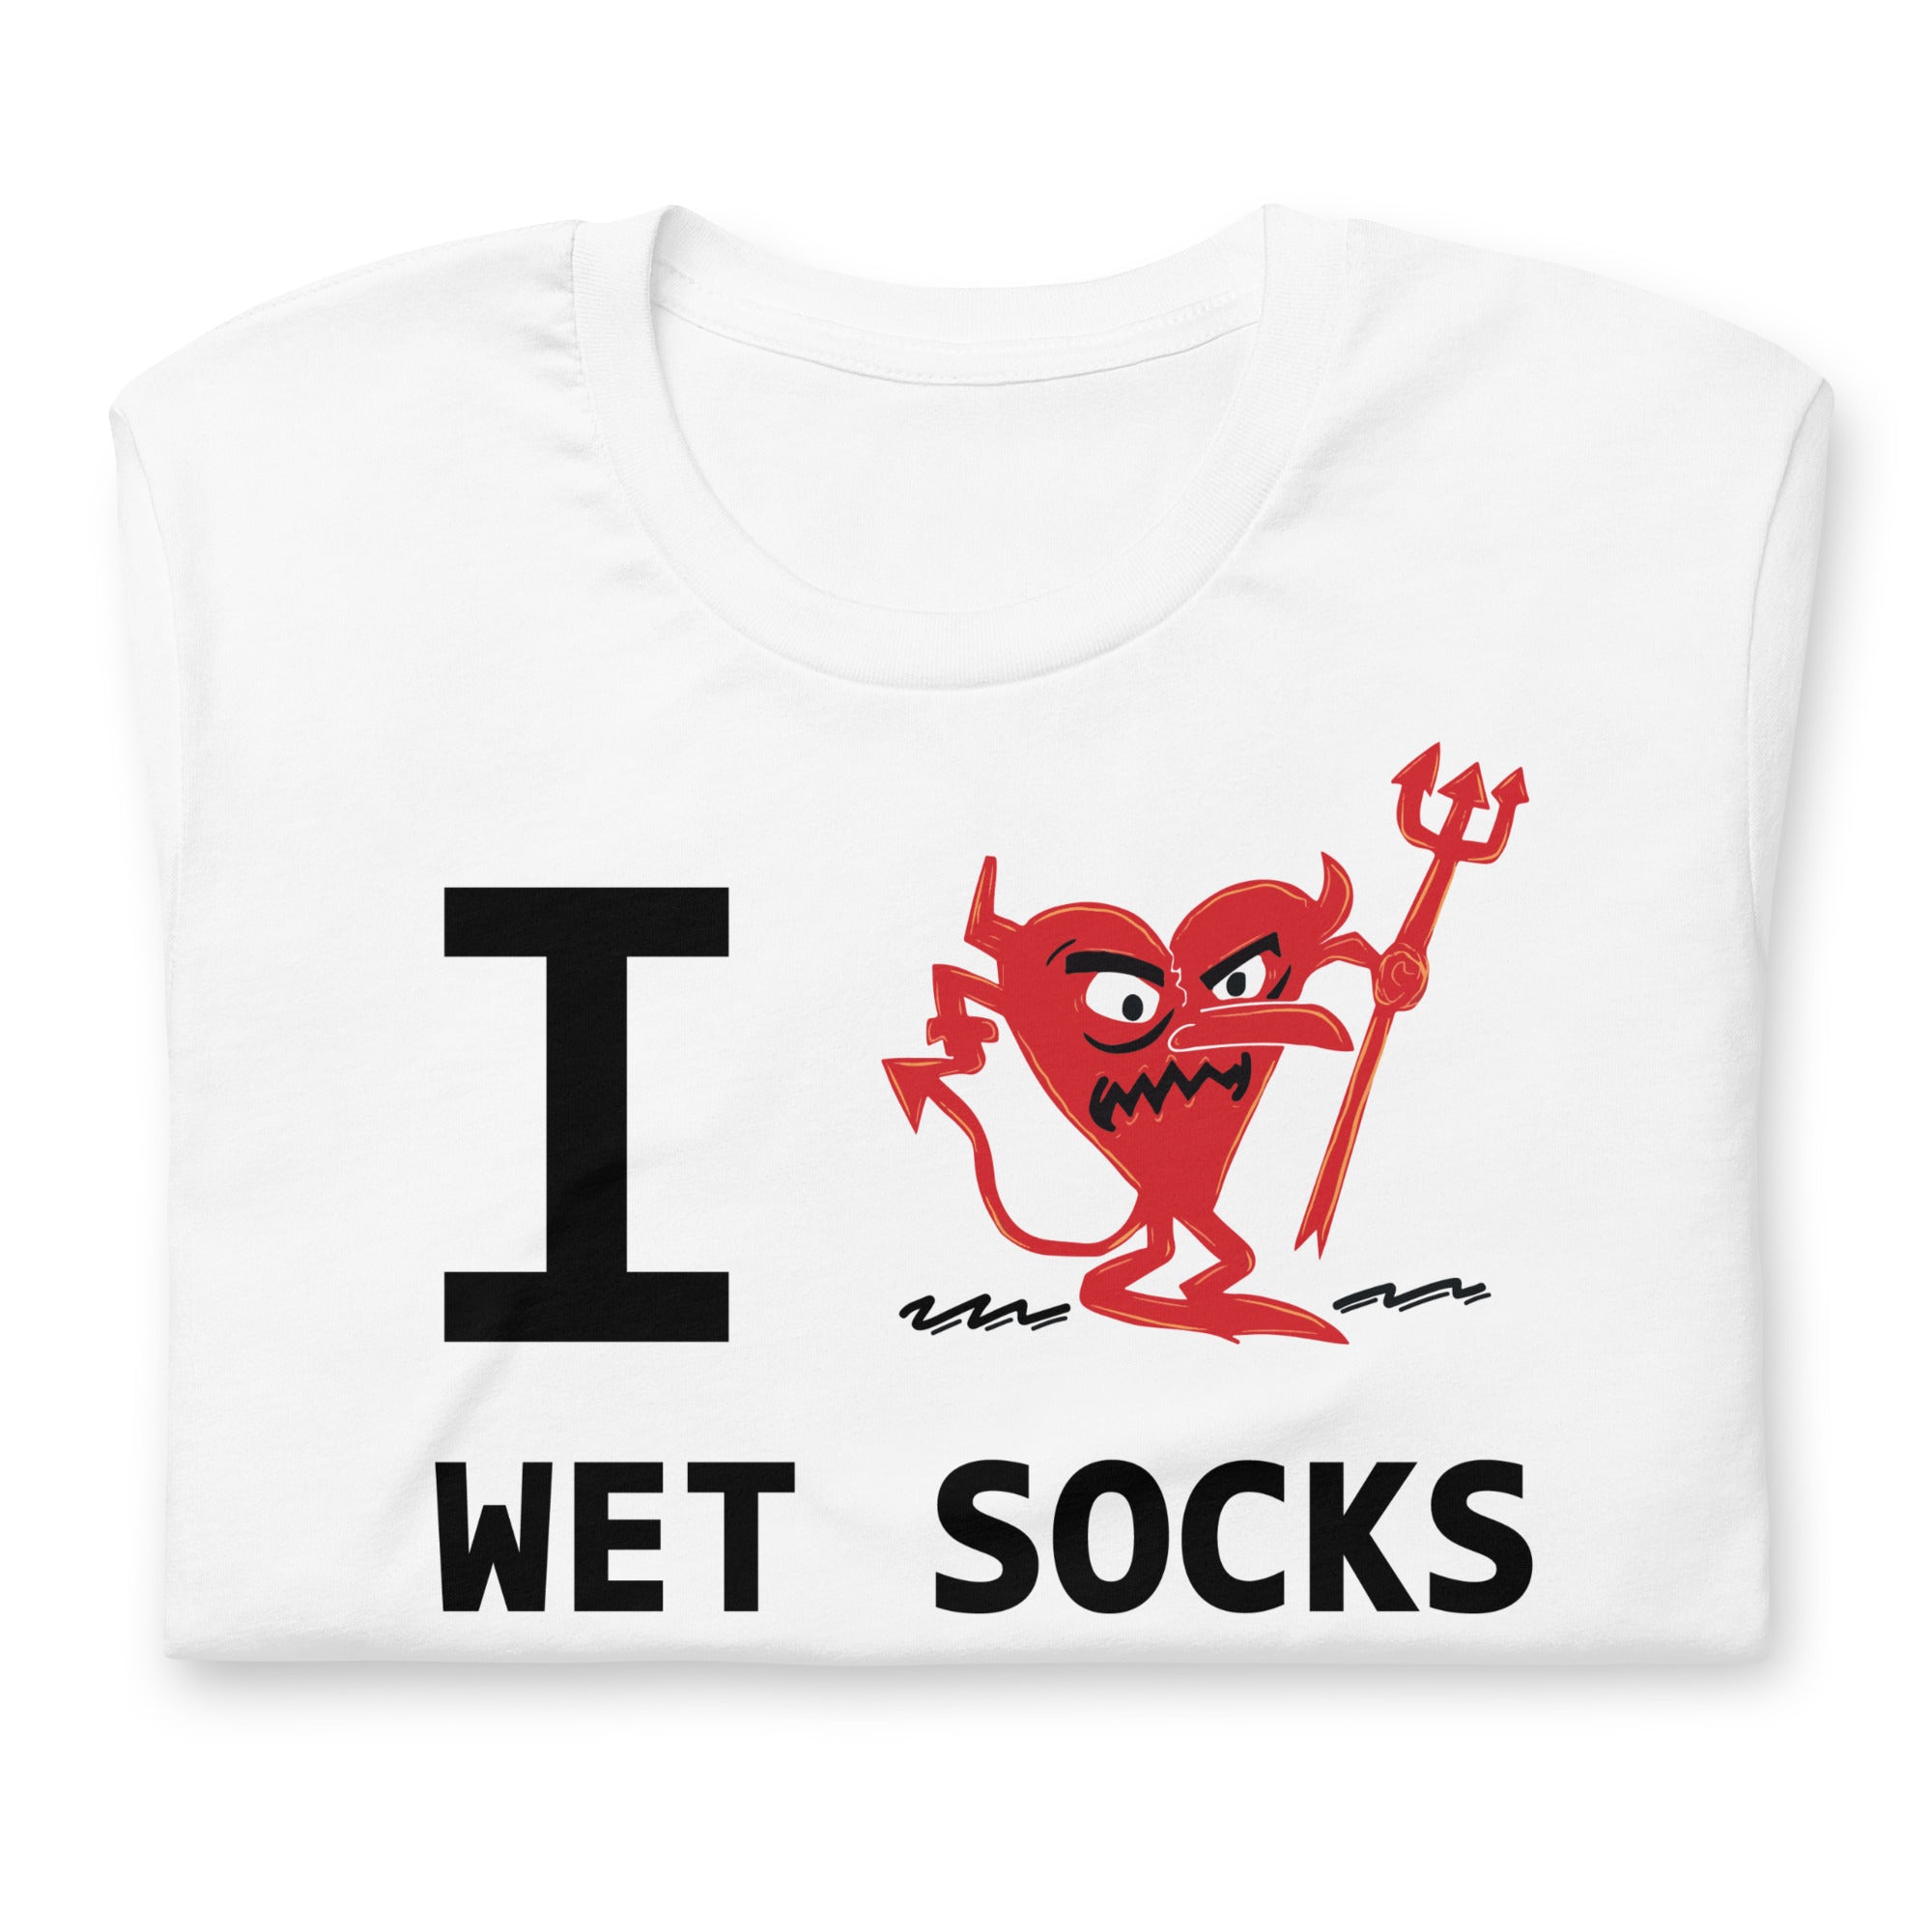 WET SOCKS Unisex t-shirt